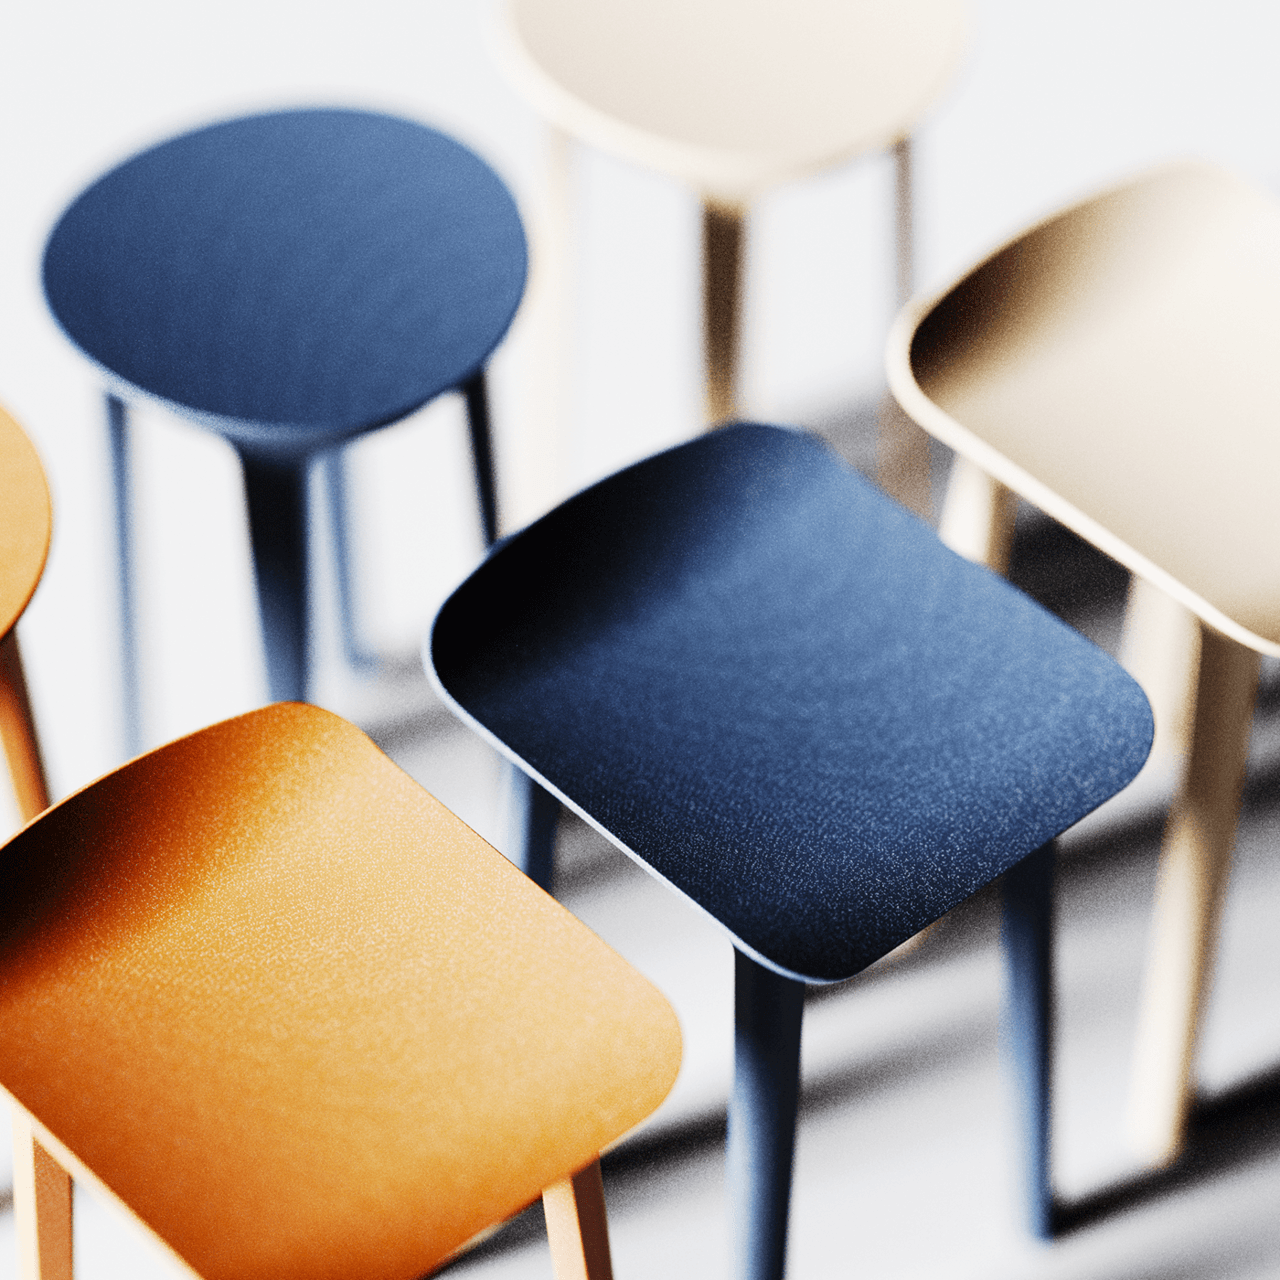 宜家新品 Ikea Odger椅子 再生资源创造的作品 普象网